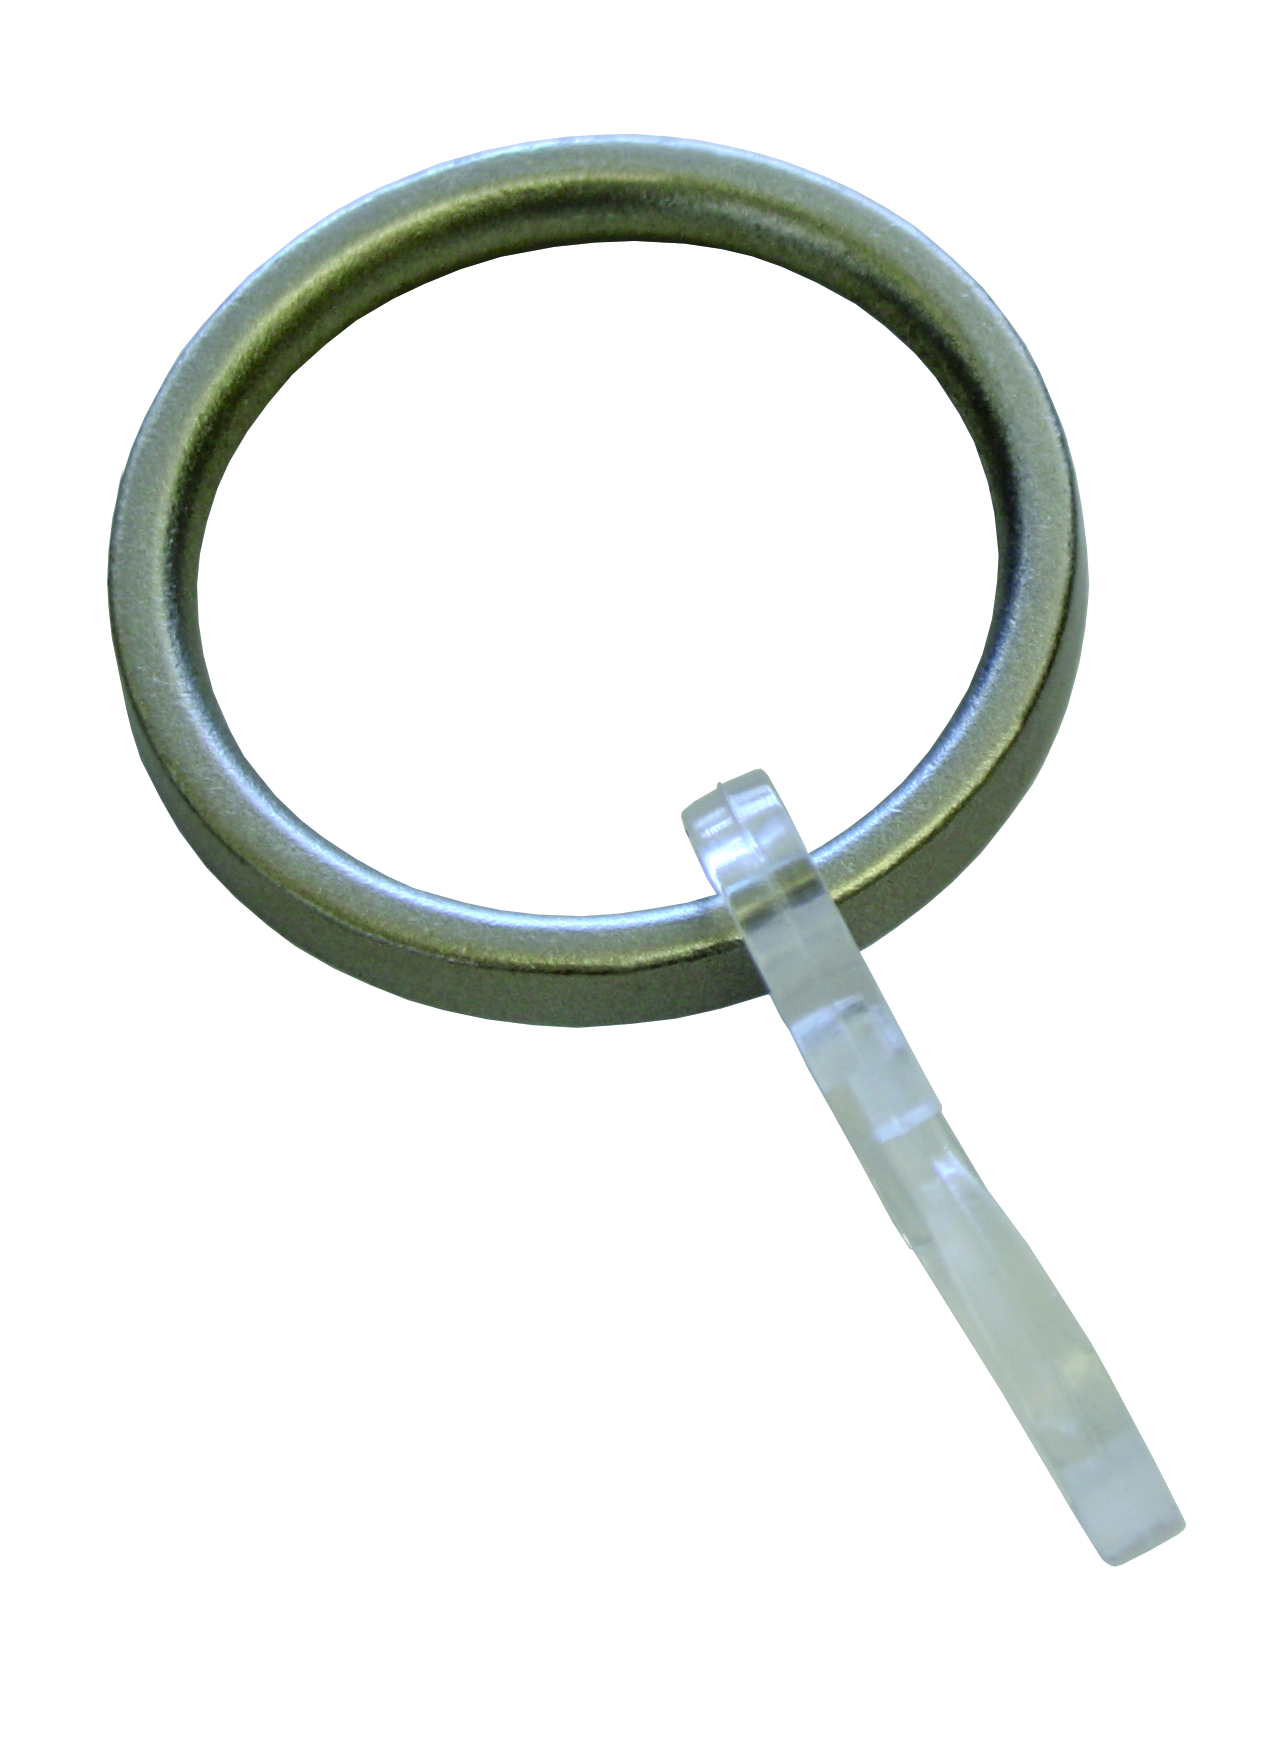 Kroužky (bez vložky) s háčky Entry, vzhled ušlechtilé oceli - 10ks (Kov, včetně UH zavíracího háčku, vnitřní průměr 29 mm, vnější průměr 34 mm, šířka 4 mm.)